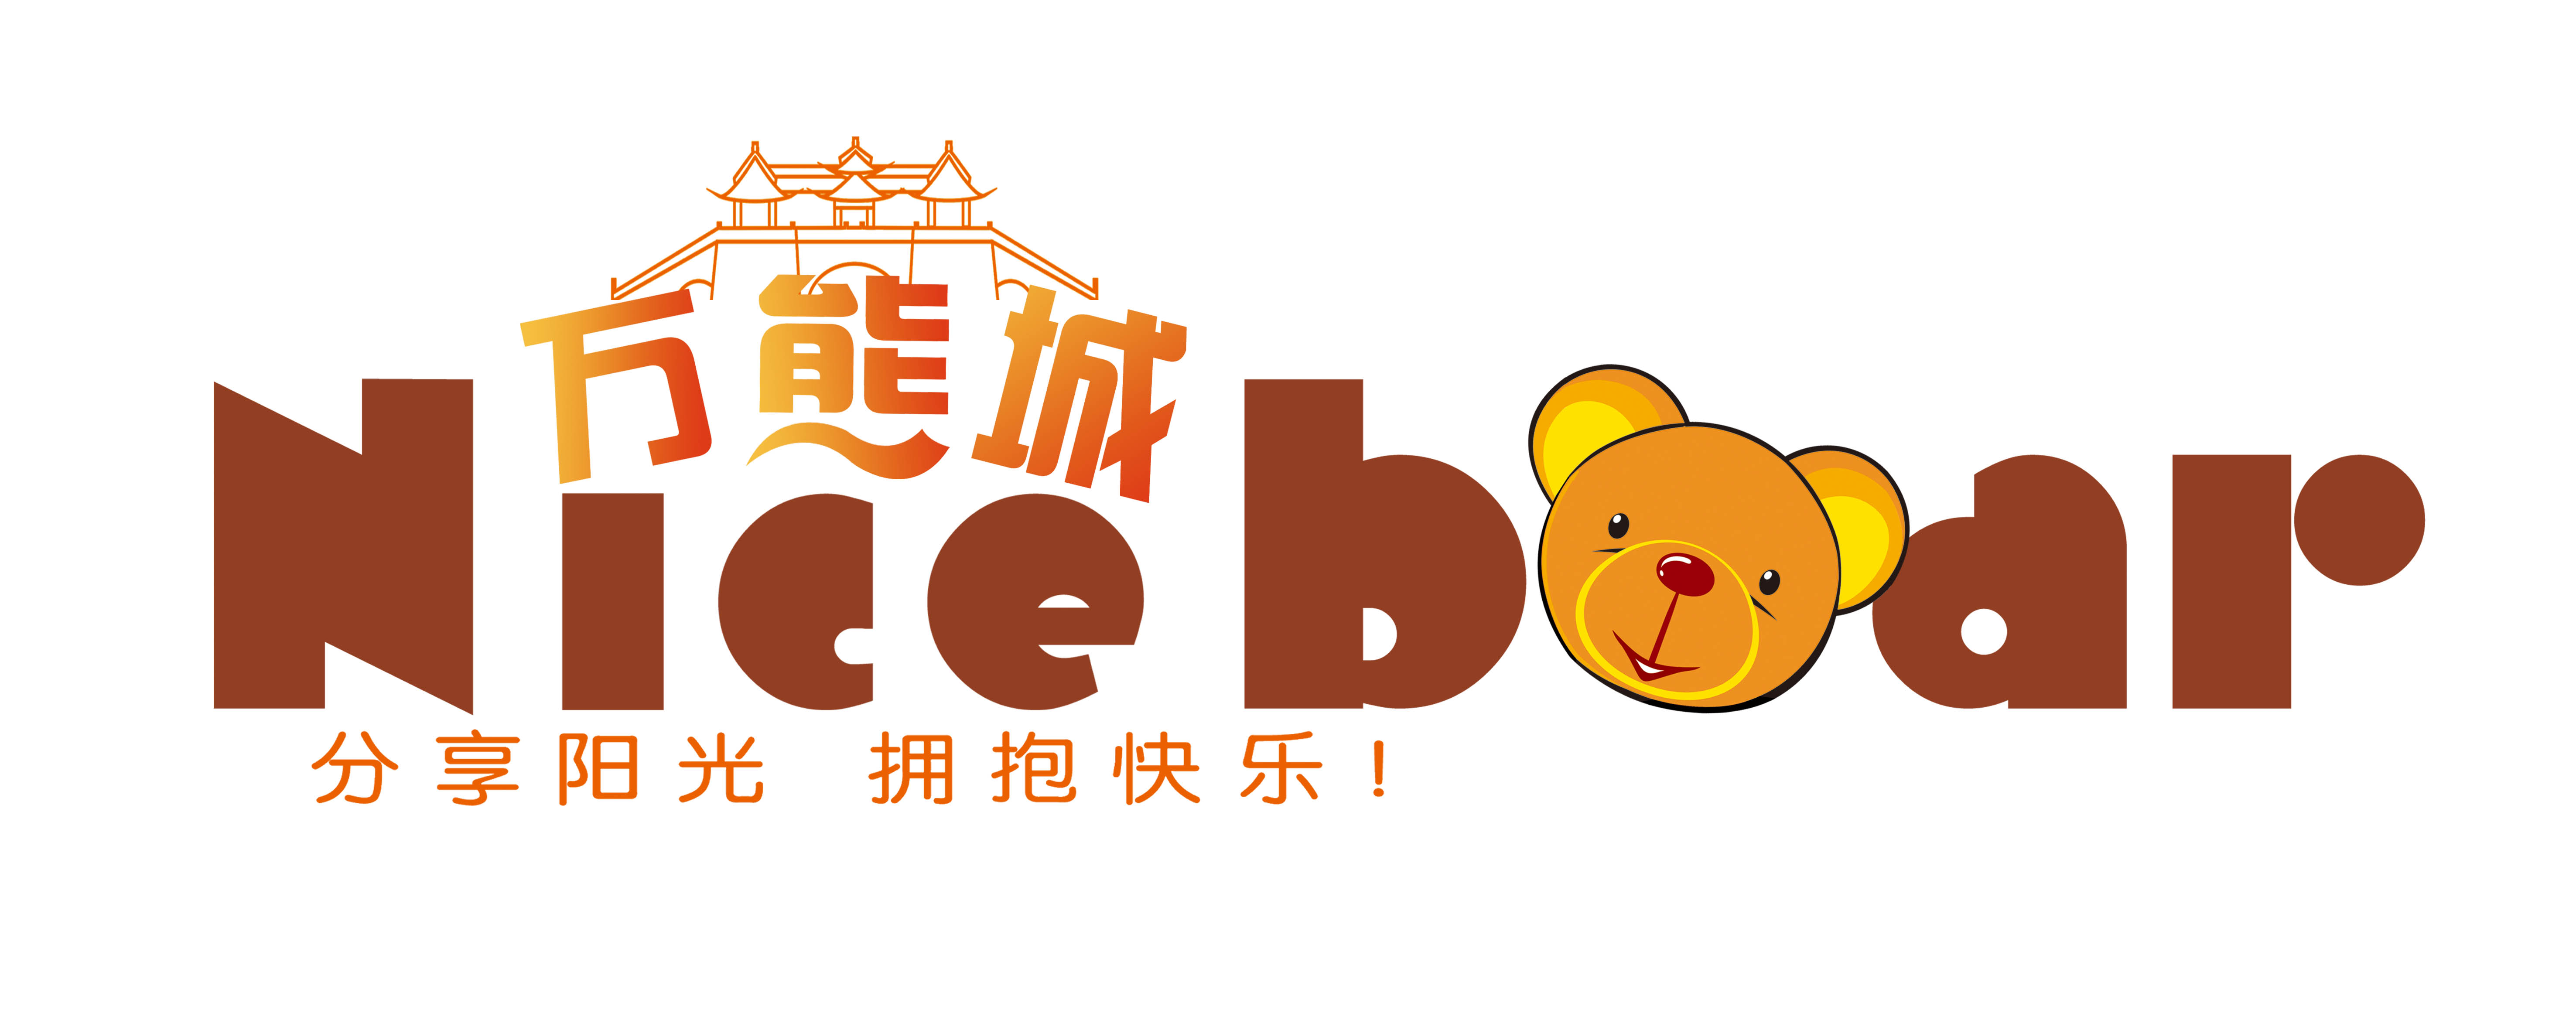 玩具礼品熊网店logo设计